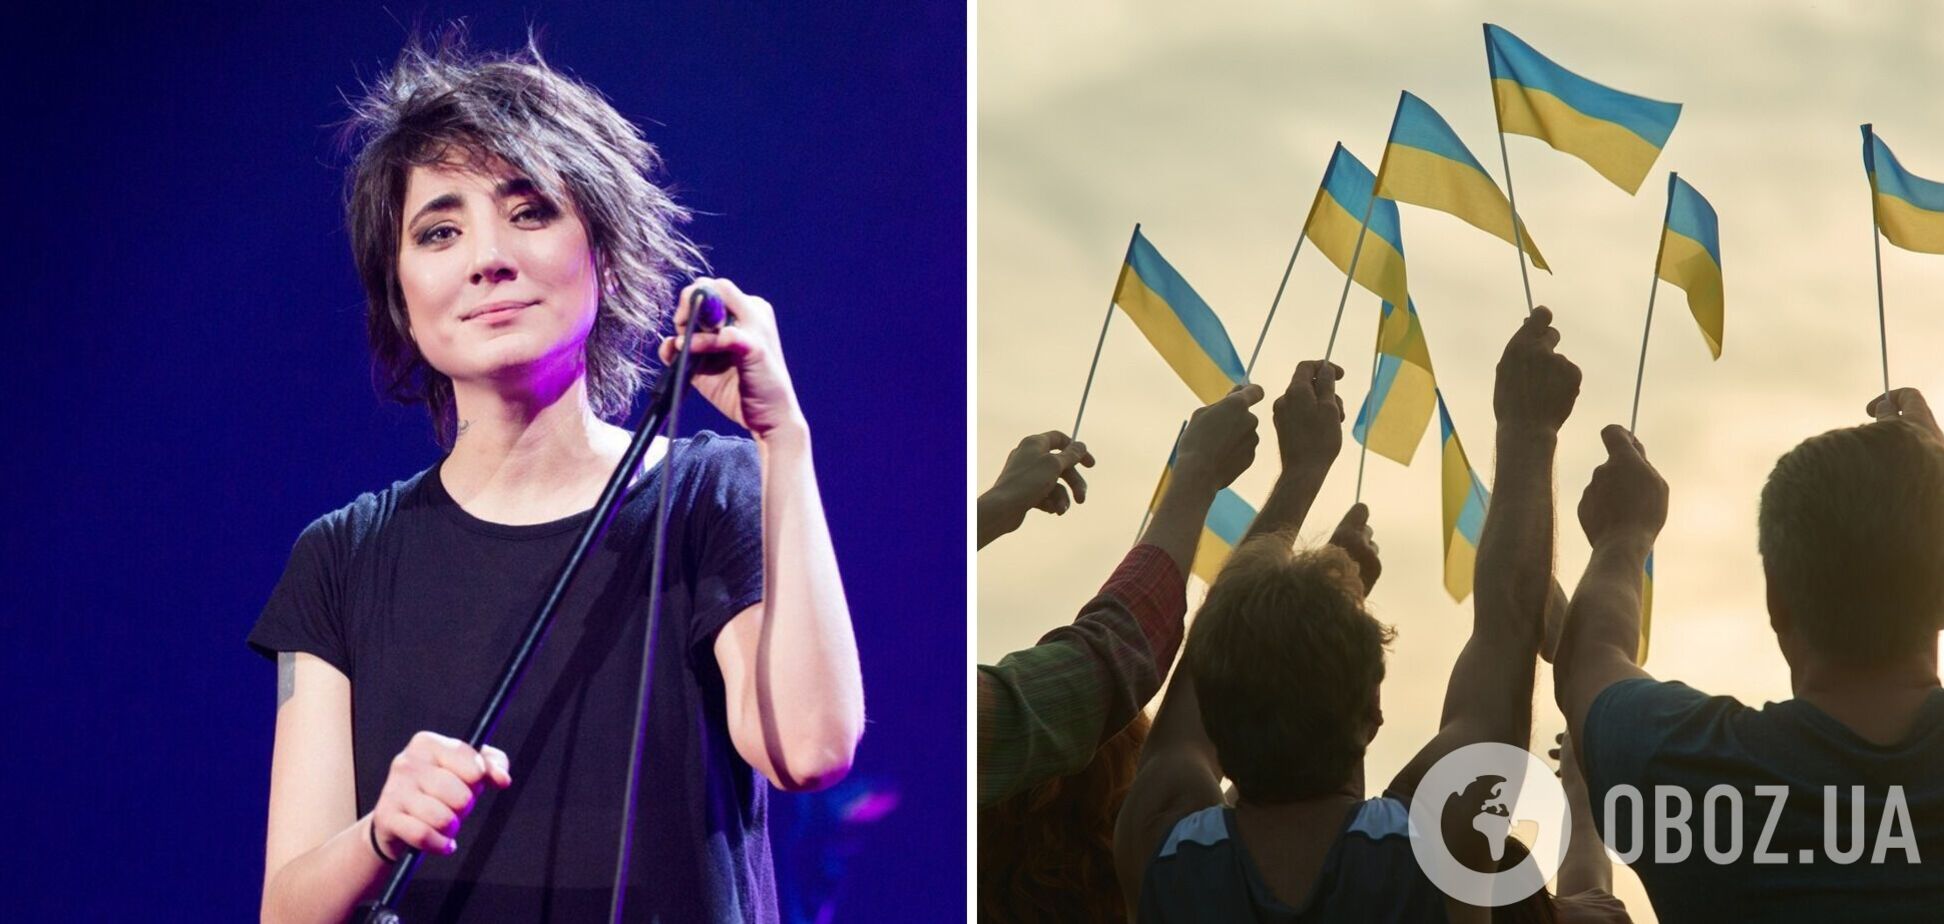 'Желаю мира': Земфира, признанная в России 'иноагентом', в День влюбленных поддержала Украину